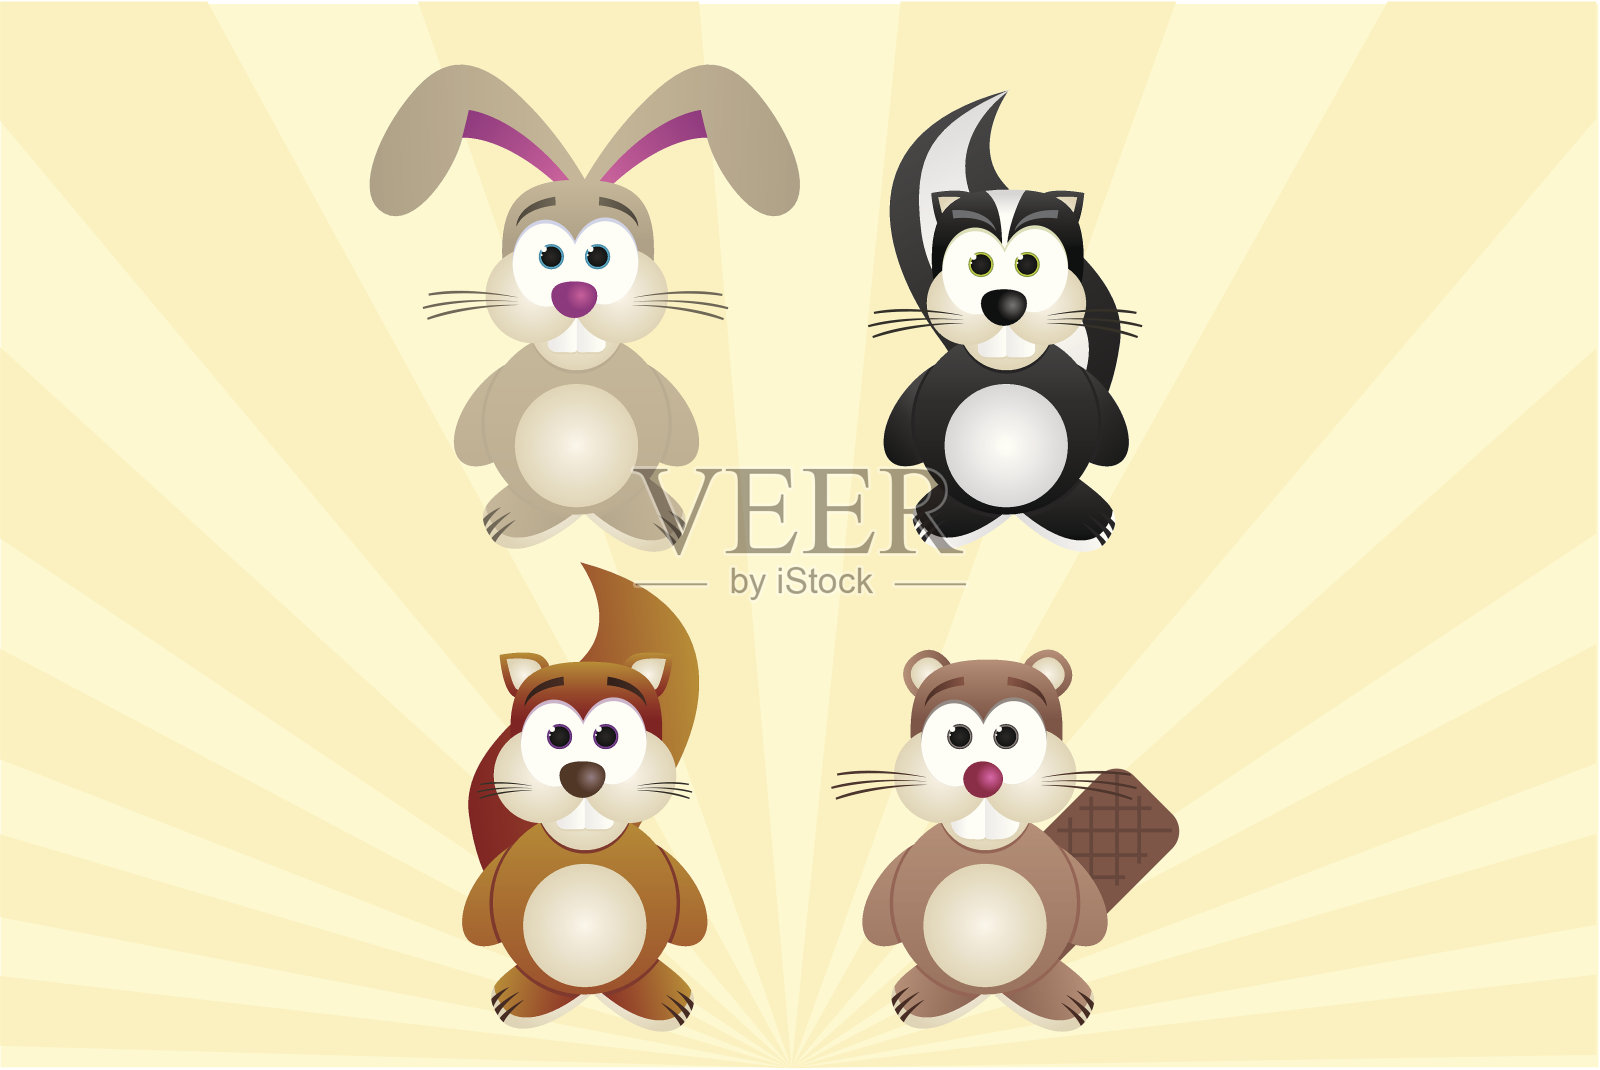 一组4种动物:兔子，臭鼬，松鼠，海狸设计元素图片